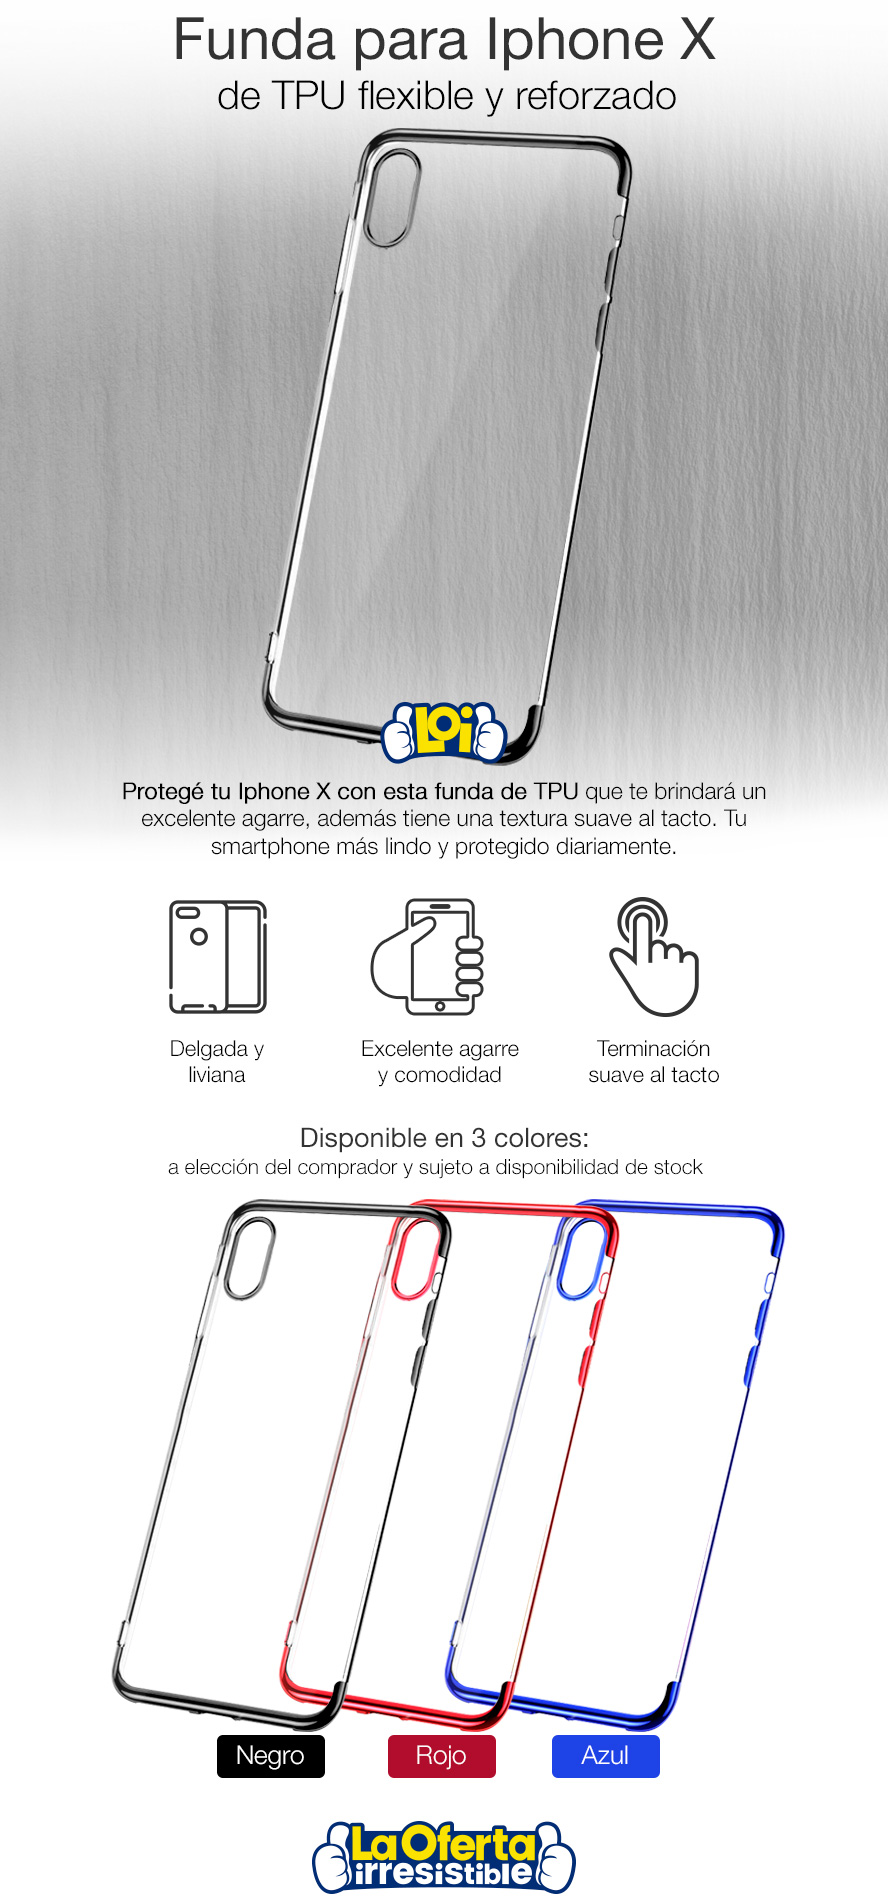 Funda Cover para Iphone X en TPU Flexible y Reforzado - Azul, oferta LOi.